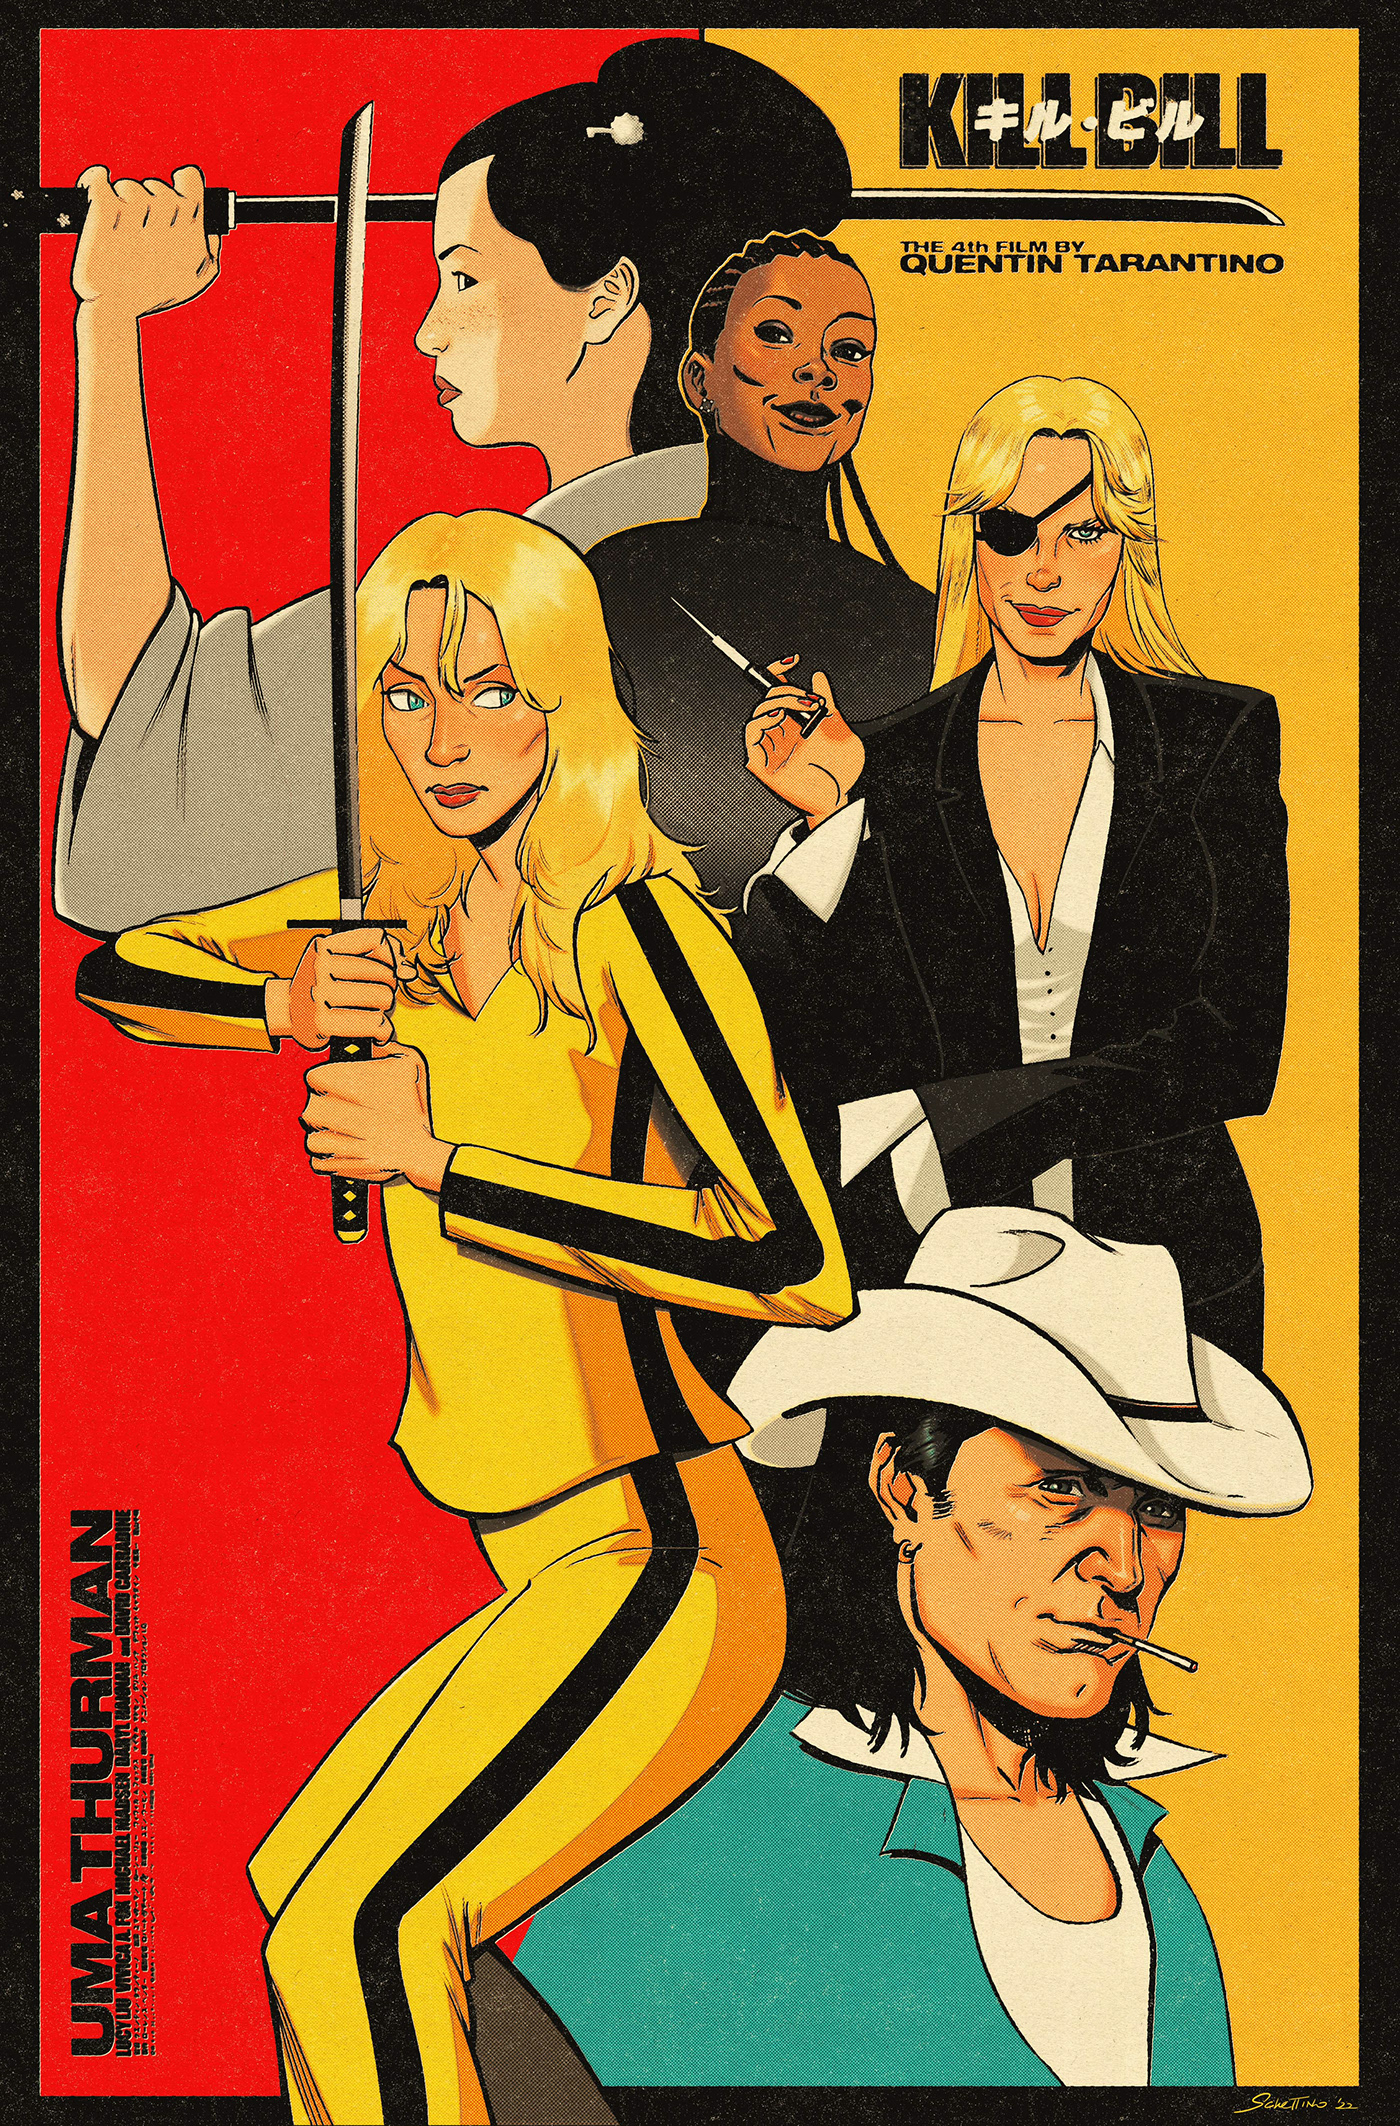 artwork Digital Art  digital illustration ILLUSTRATION  kill bill movie poster Movies poster Tarantino tarantino movies